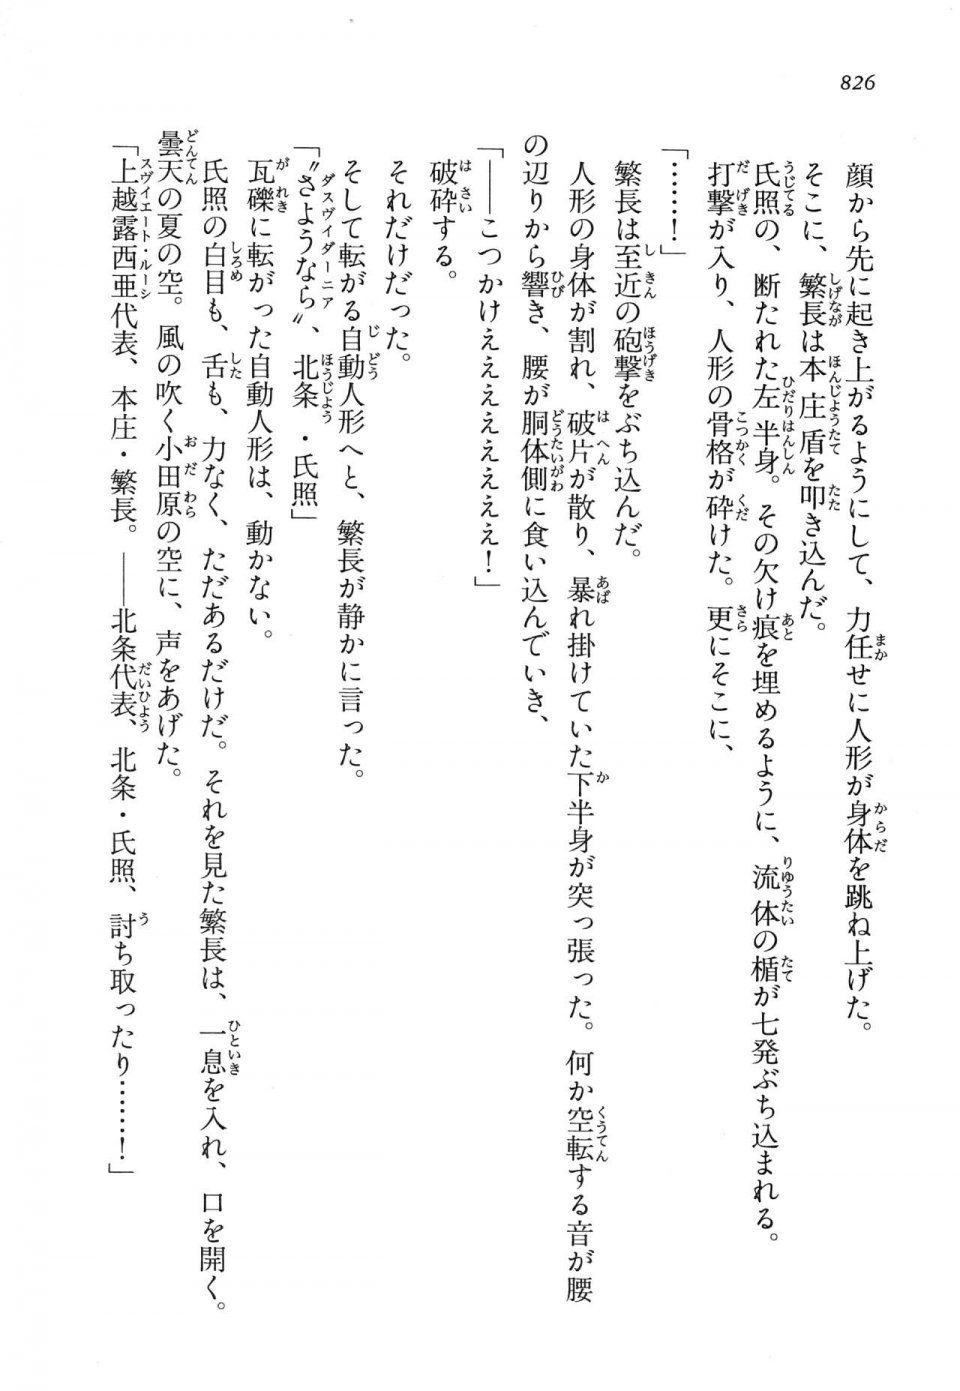 Kyoukai Senjou no Horizon LN Vol 14(6B) - Photo #826